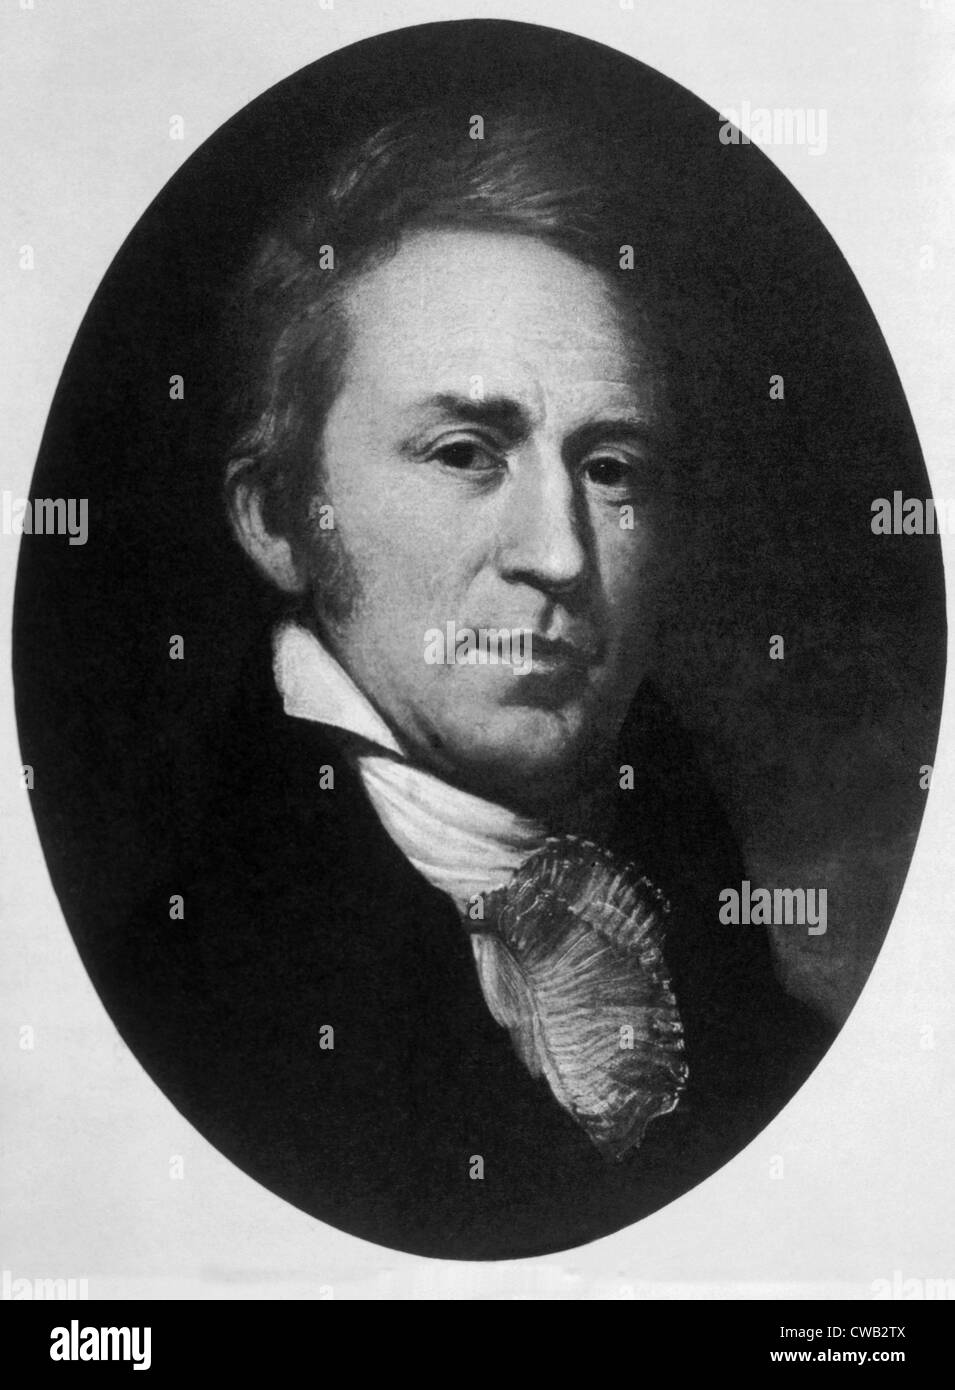 William Clark (1770-1838) co-dirigeant de l'expédition Lewis et Clark, portrait par Charles Willson Peale Banque D'Images